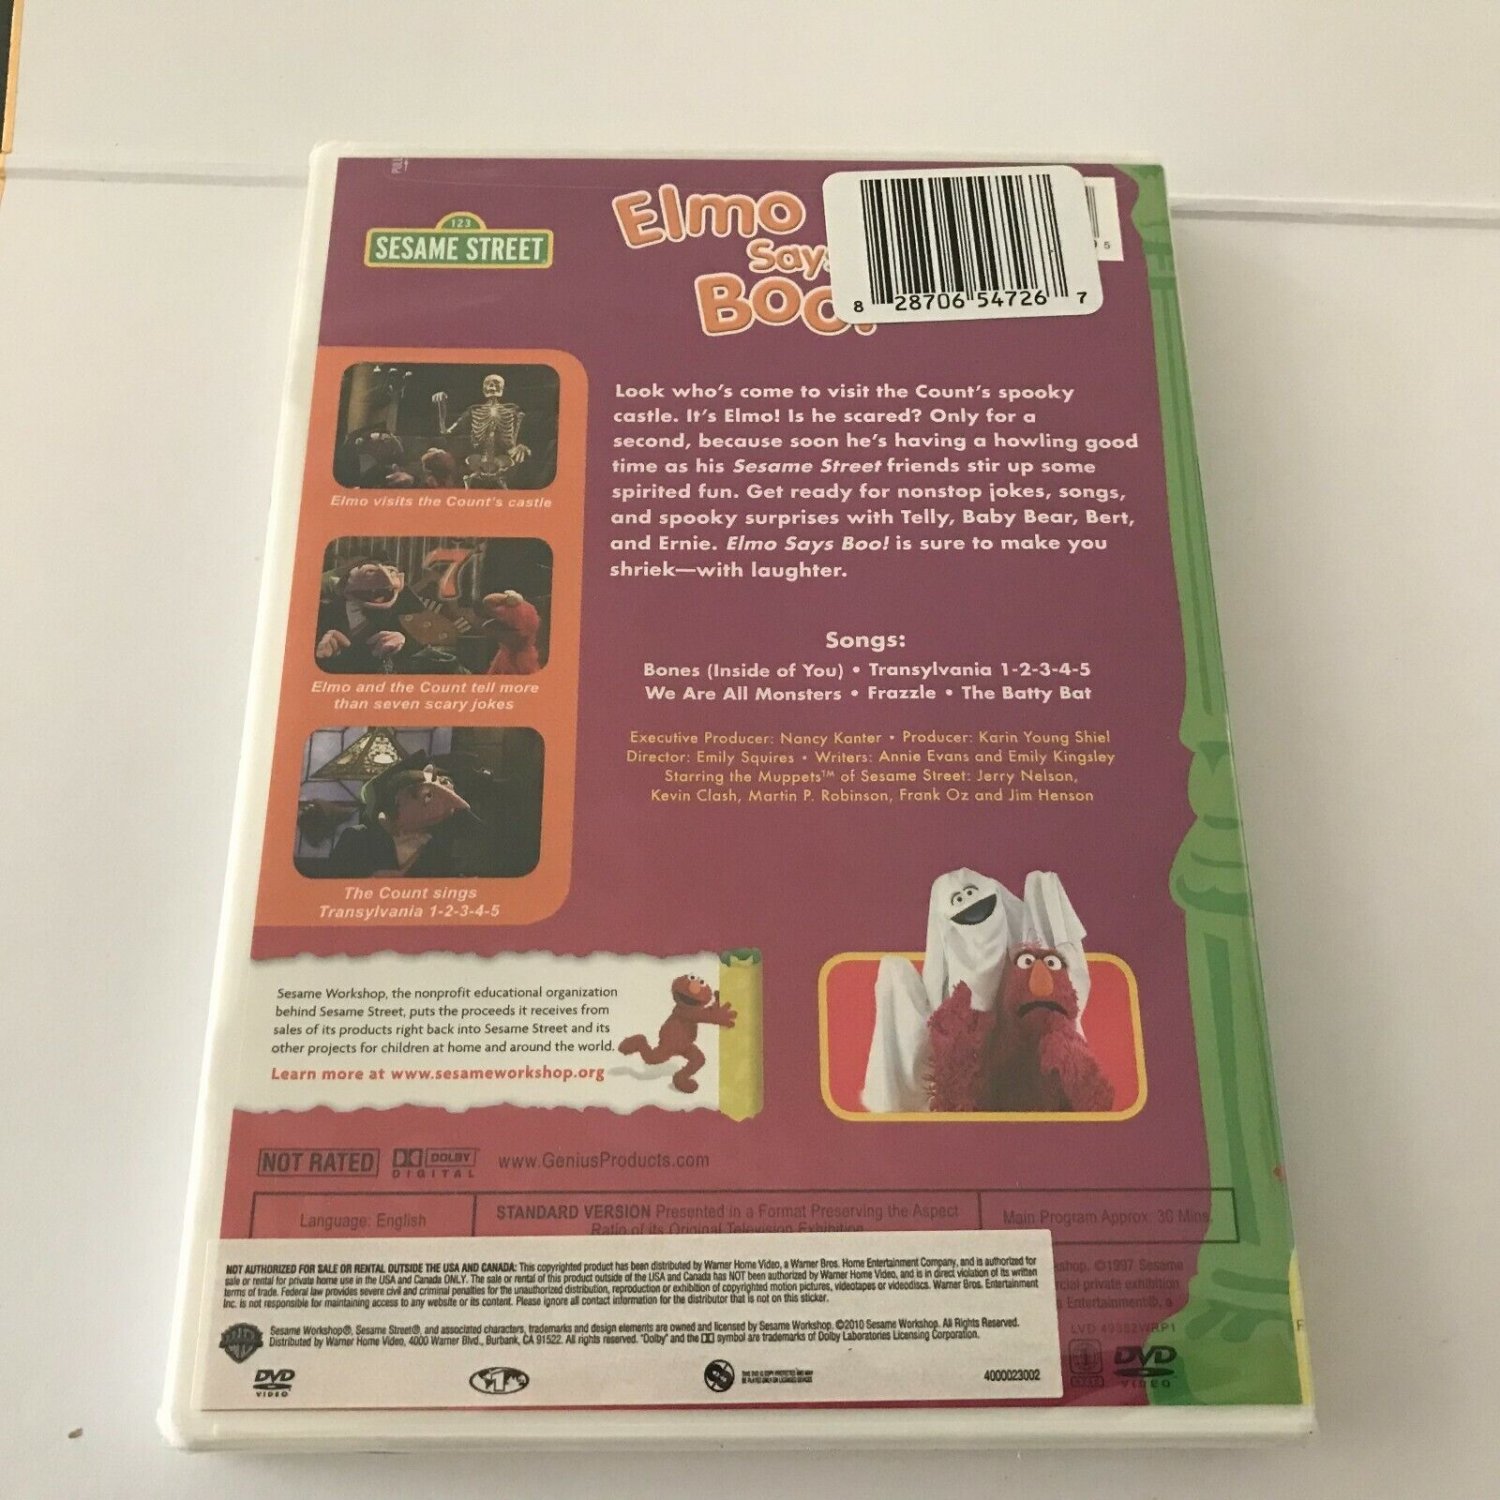 2 New Sesame Street DVDs Sealed - Monster Magic & Elmo Says Boo